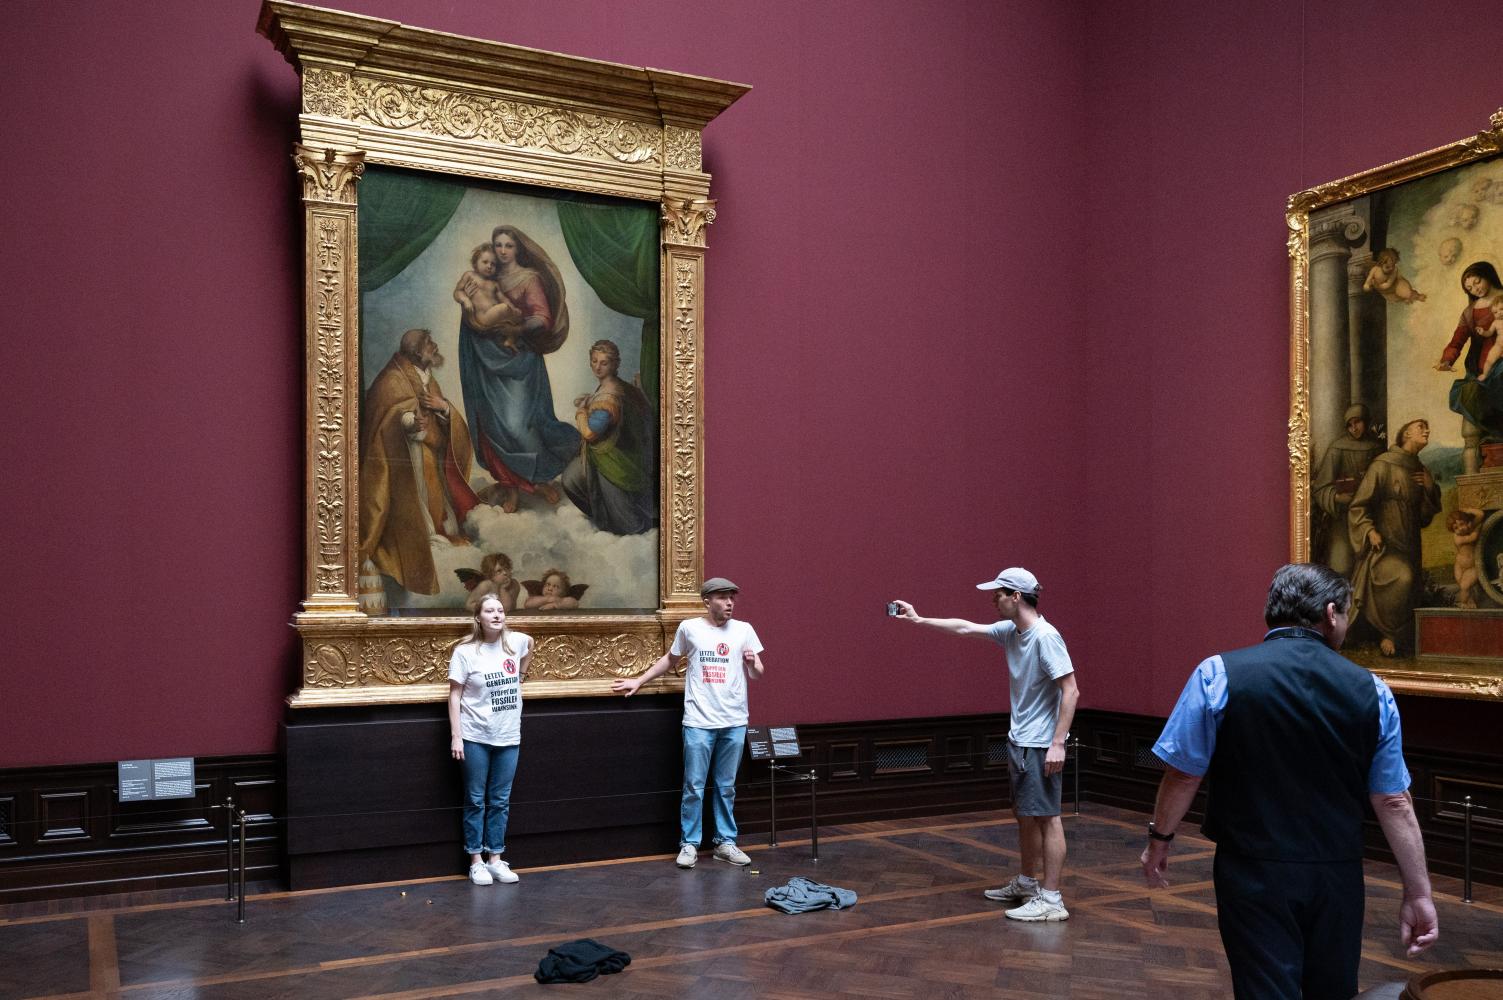 Umweltaktivisten der Gruppe "Letzte Generation" stehen in der Gemäldegalerie Alte Meister in Dresden an dem Gemälde "Sixtinische Madonna" von Raffael